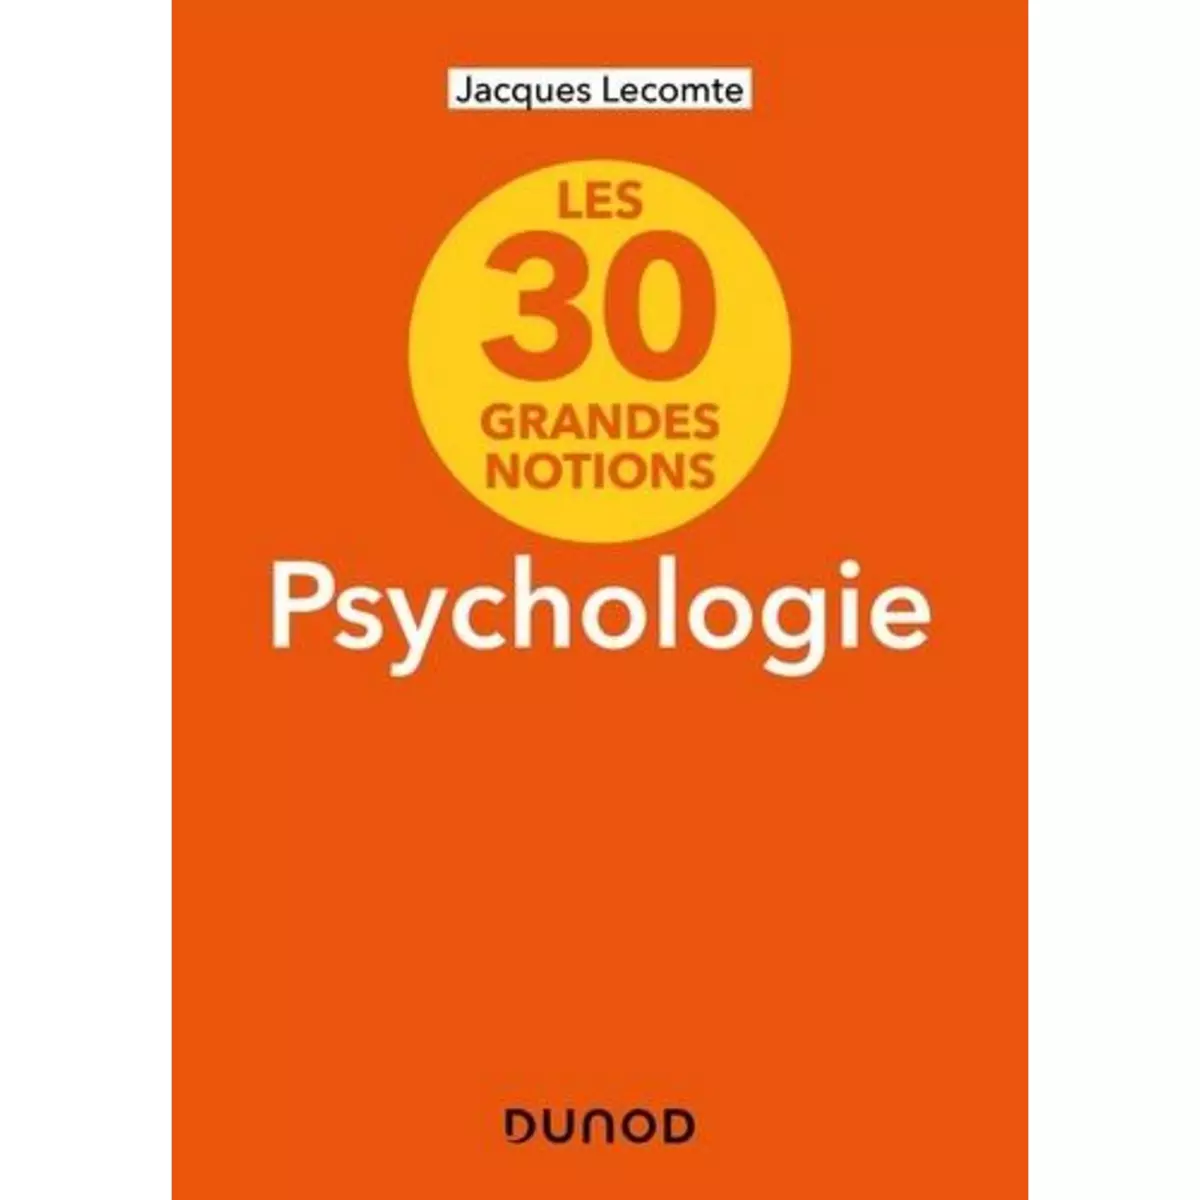  LES 30 GRANDES NOTIONS DE LA PSYCHOLOGIE, Lecomte Jacques